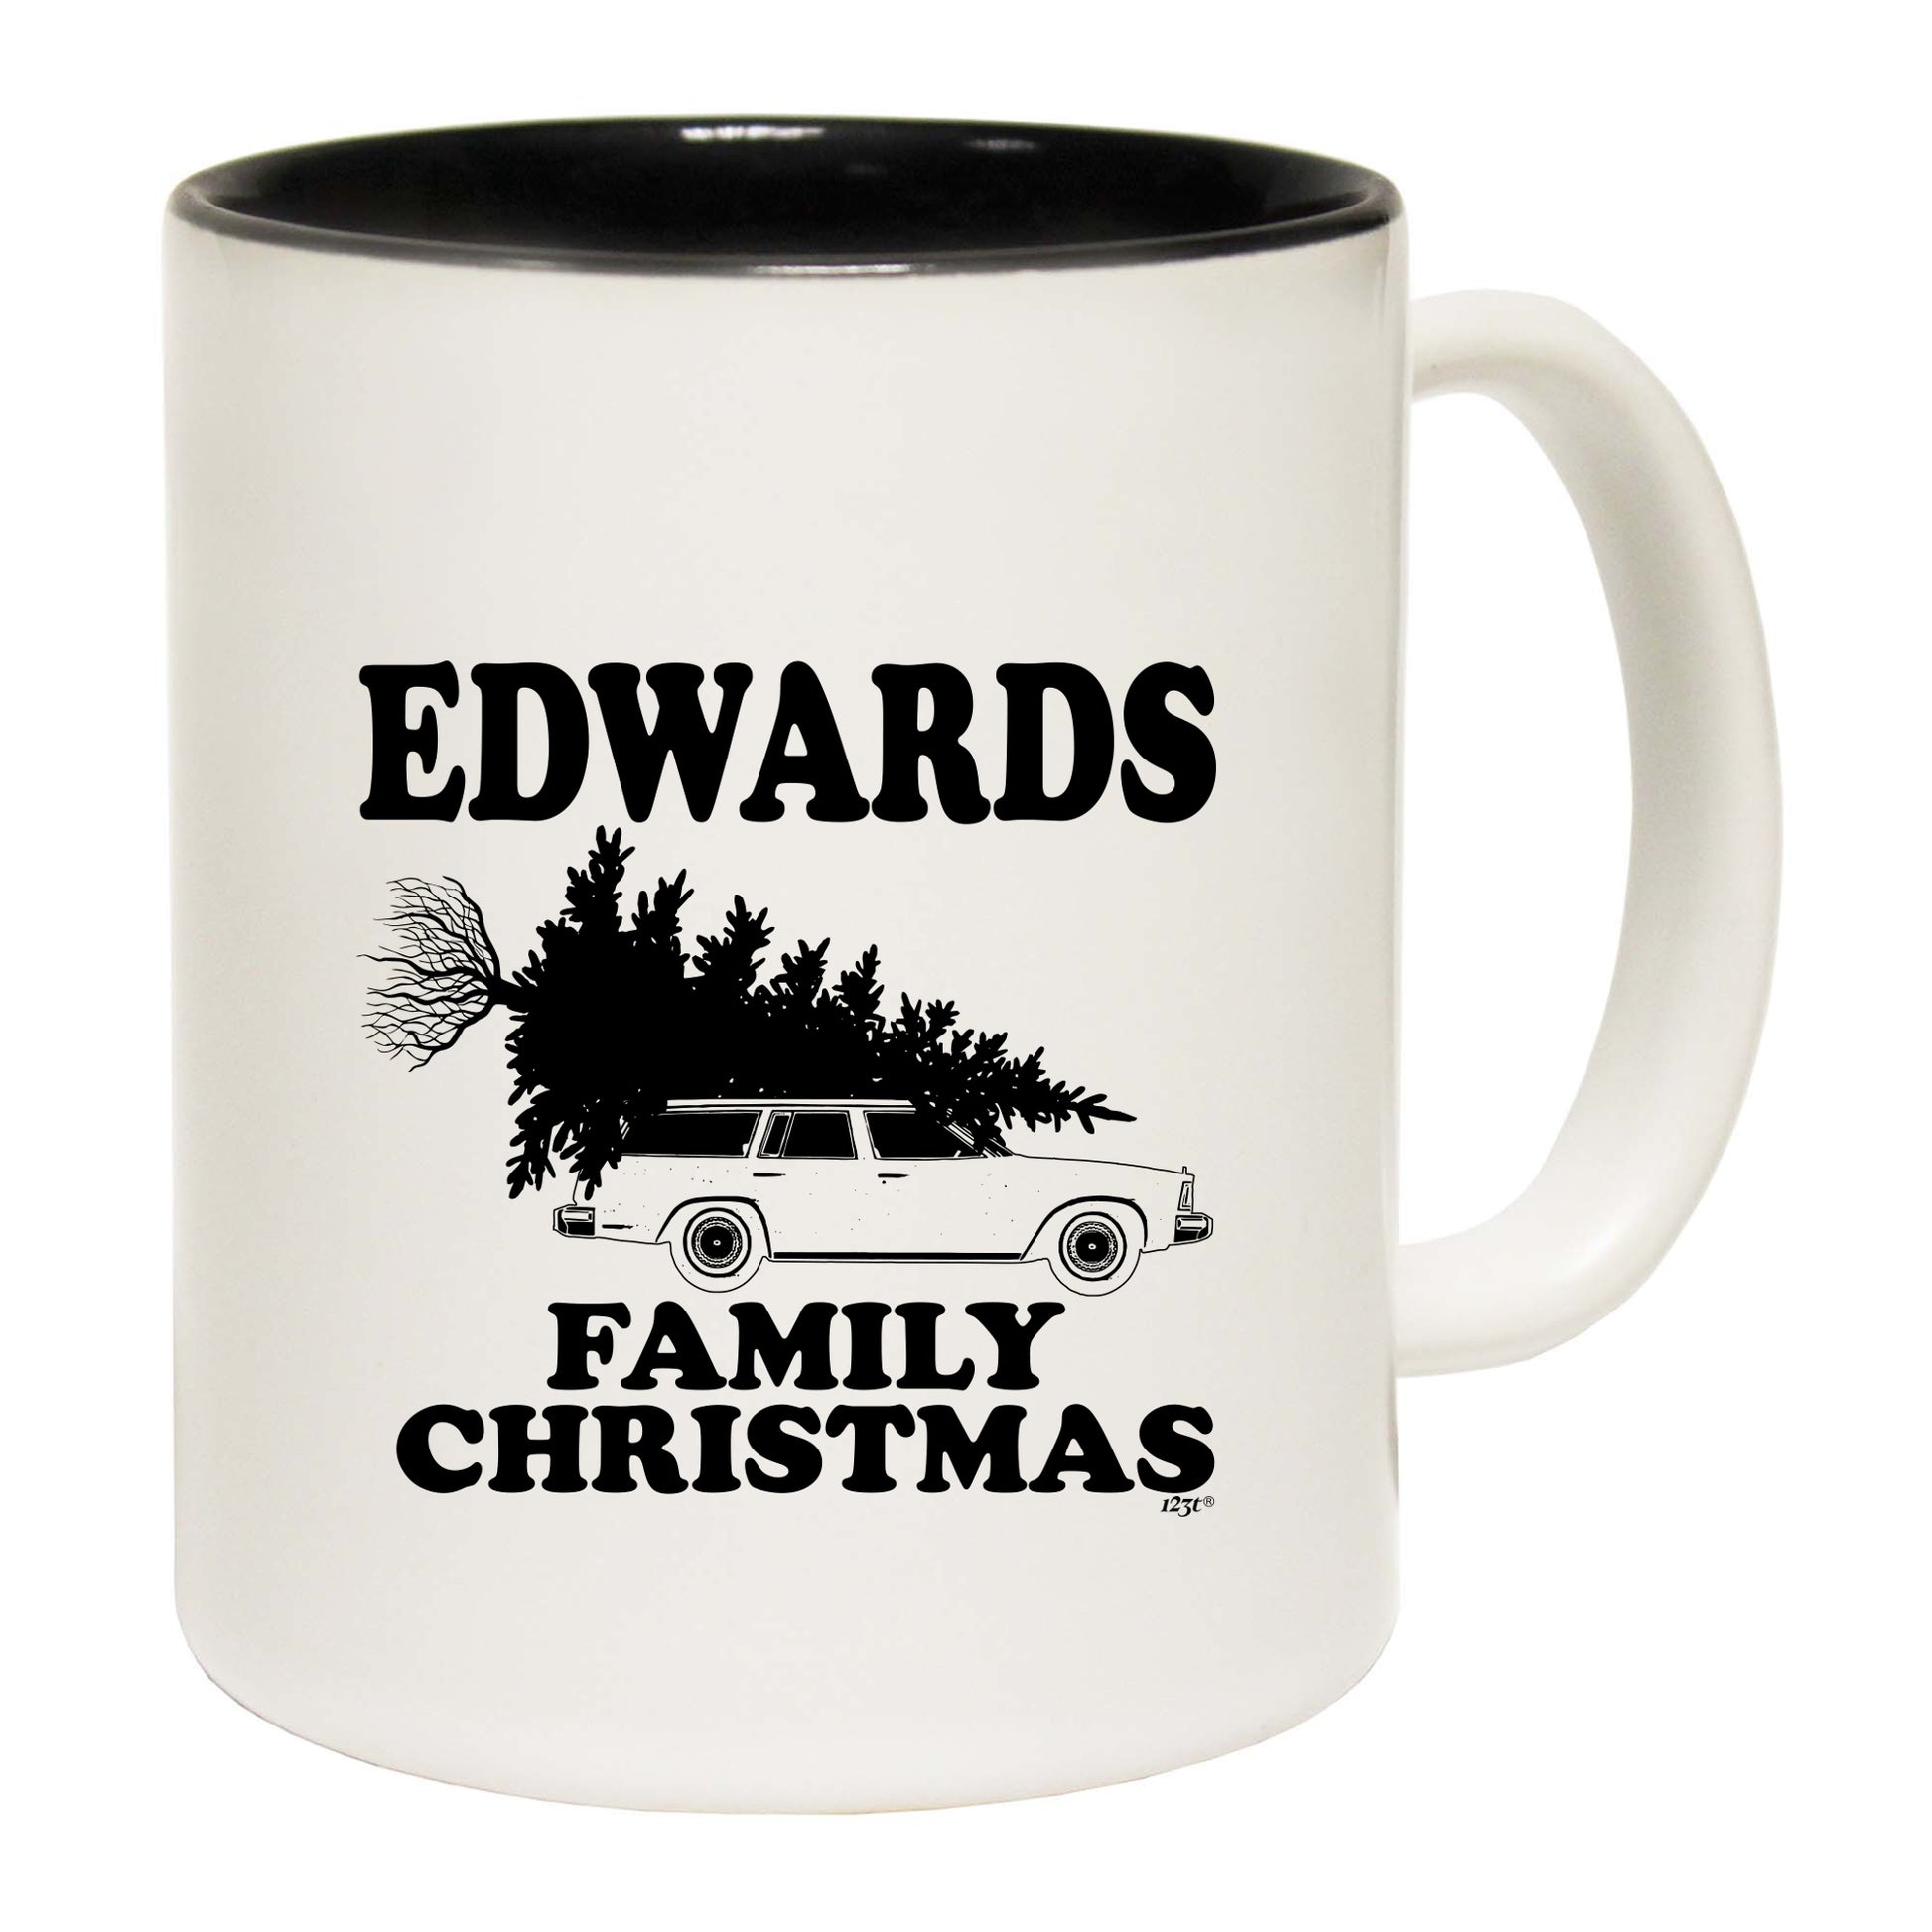 The Christmas Hub - Family Christmas Edwards - Funny Coffee Mug